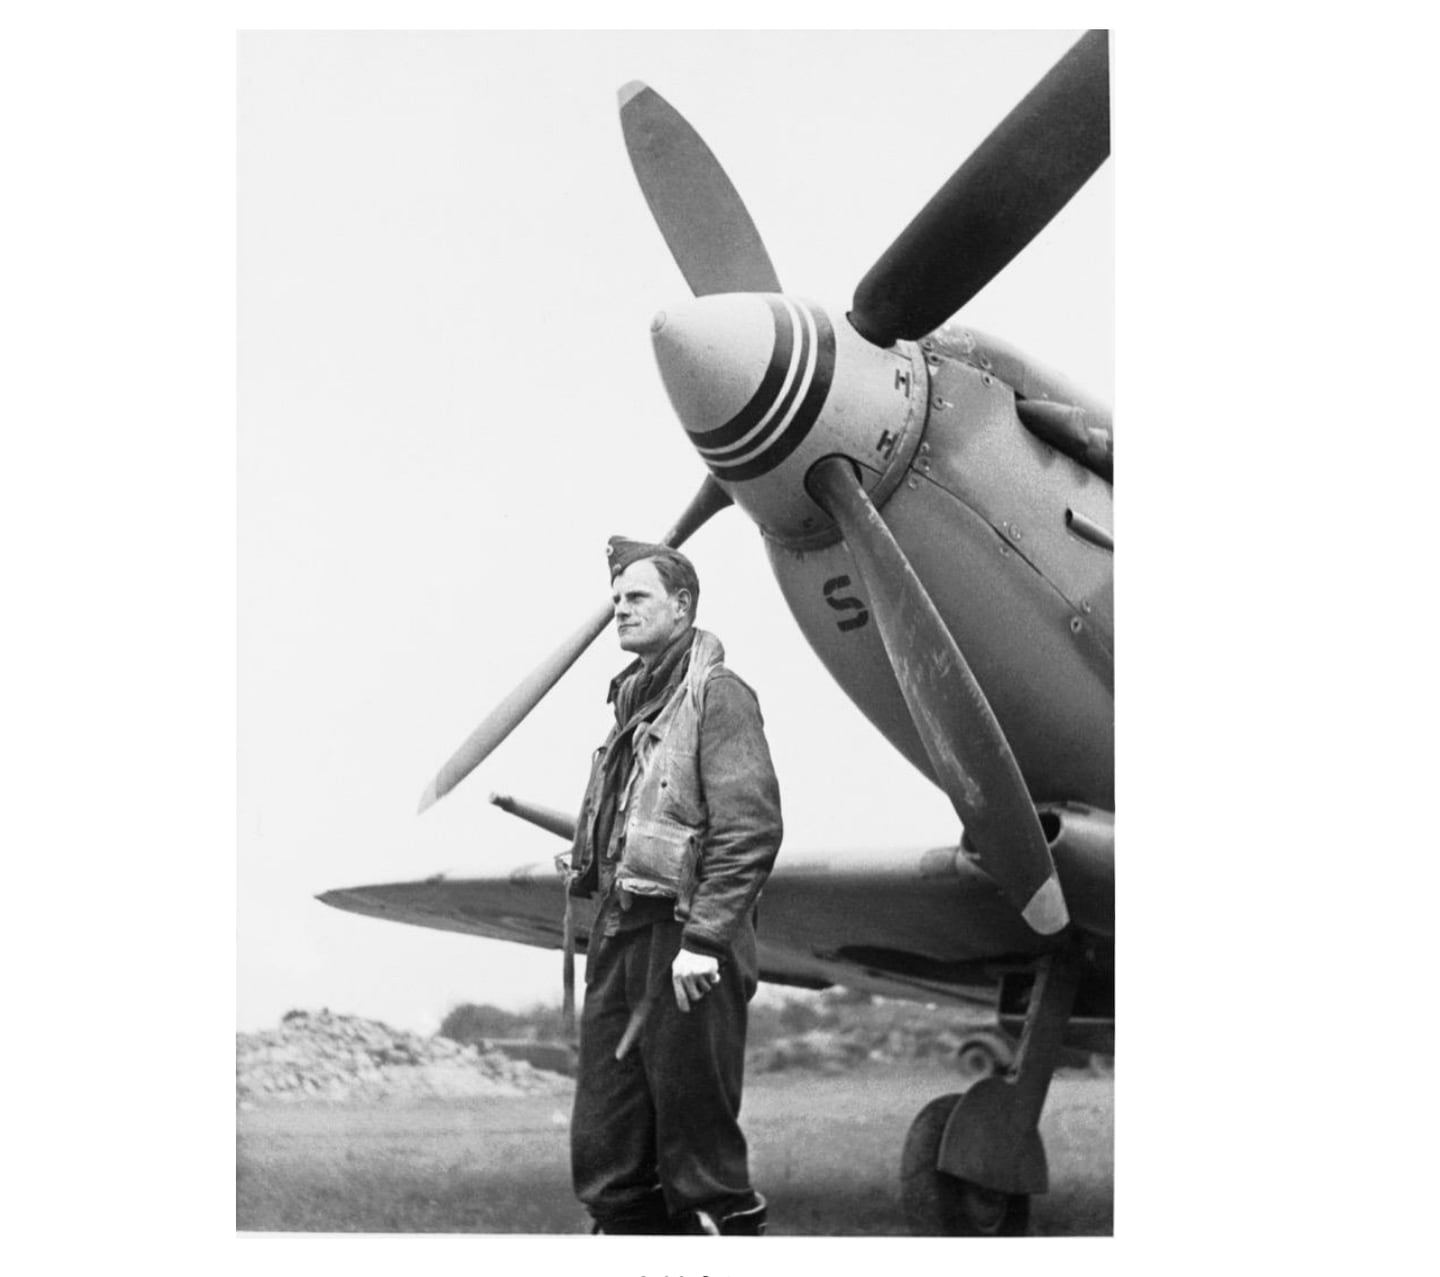 29. desember 1944 skjøt også den norske fenriken Carl Jacob Stousland ned en Focke-Wulf Fw
190 over Tubbergen i okkuperte Nederland med denne Spitfiren. Flyet fikk skader i disse
luftkampene, og Stousland nødlandet på et jorde. For den unge piloten ble dette starten på den
lengste flukten gjennom okkupert område for noen alliert flyver - 79 døgn.